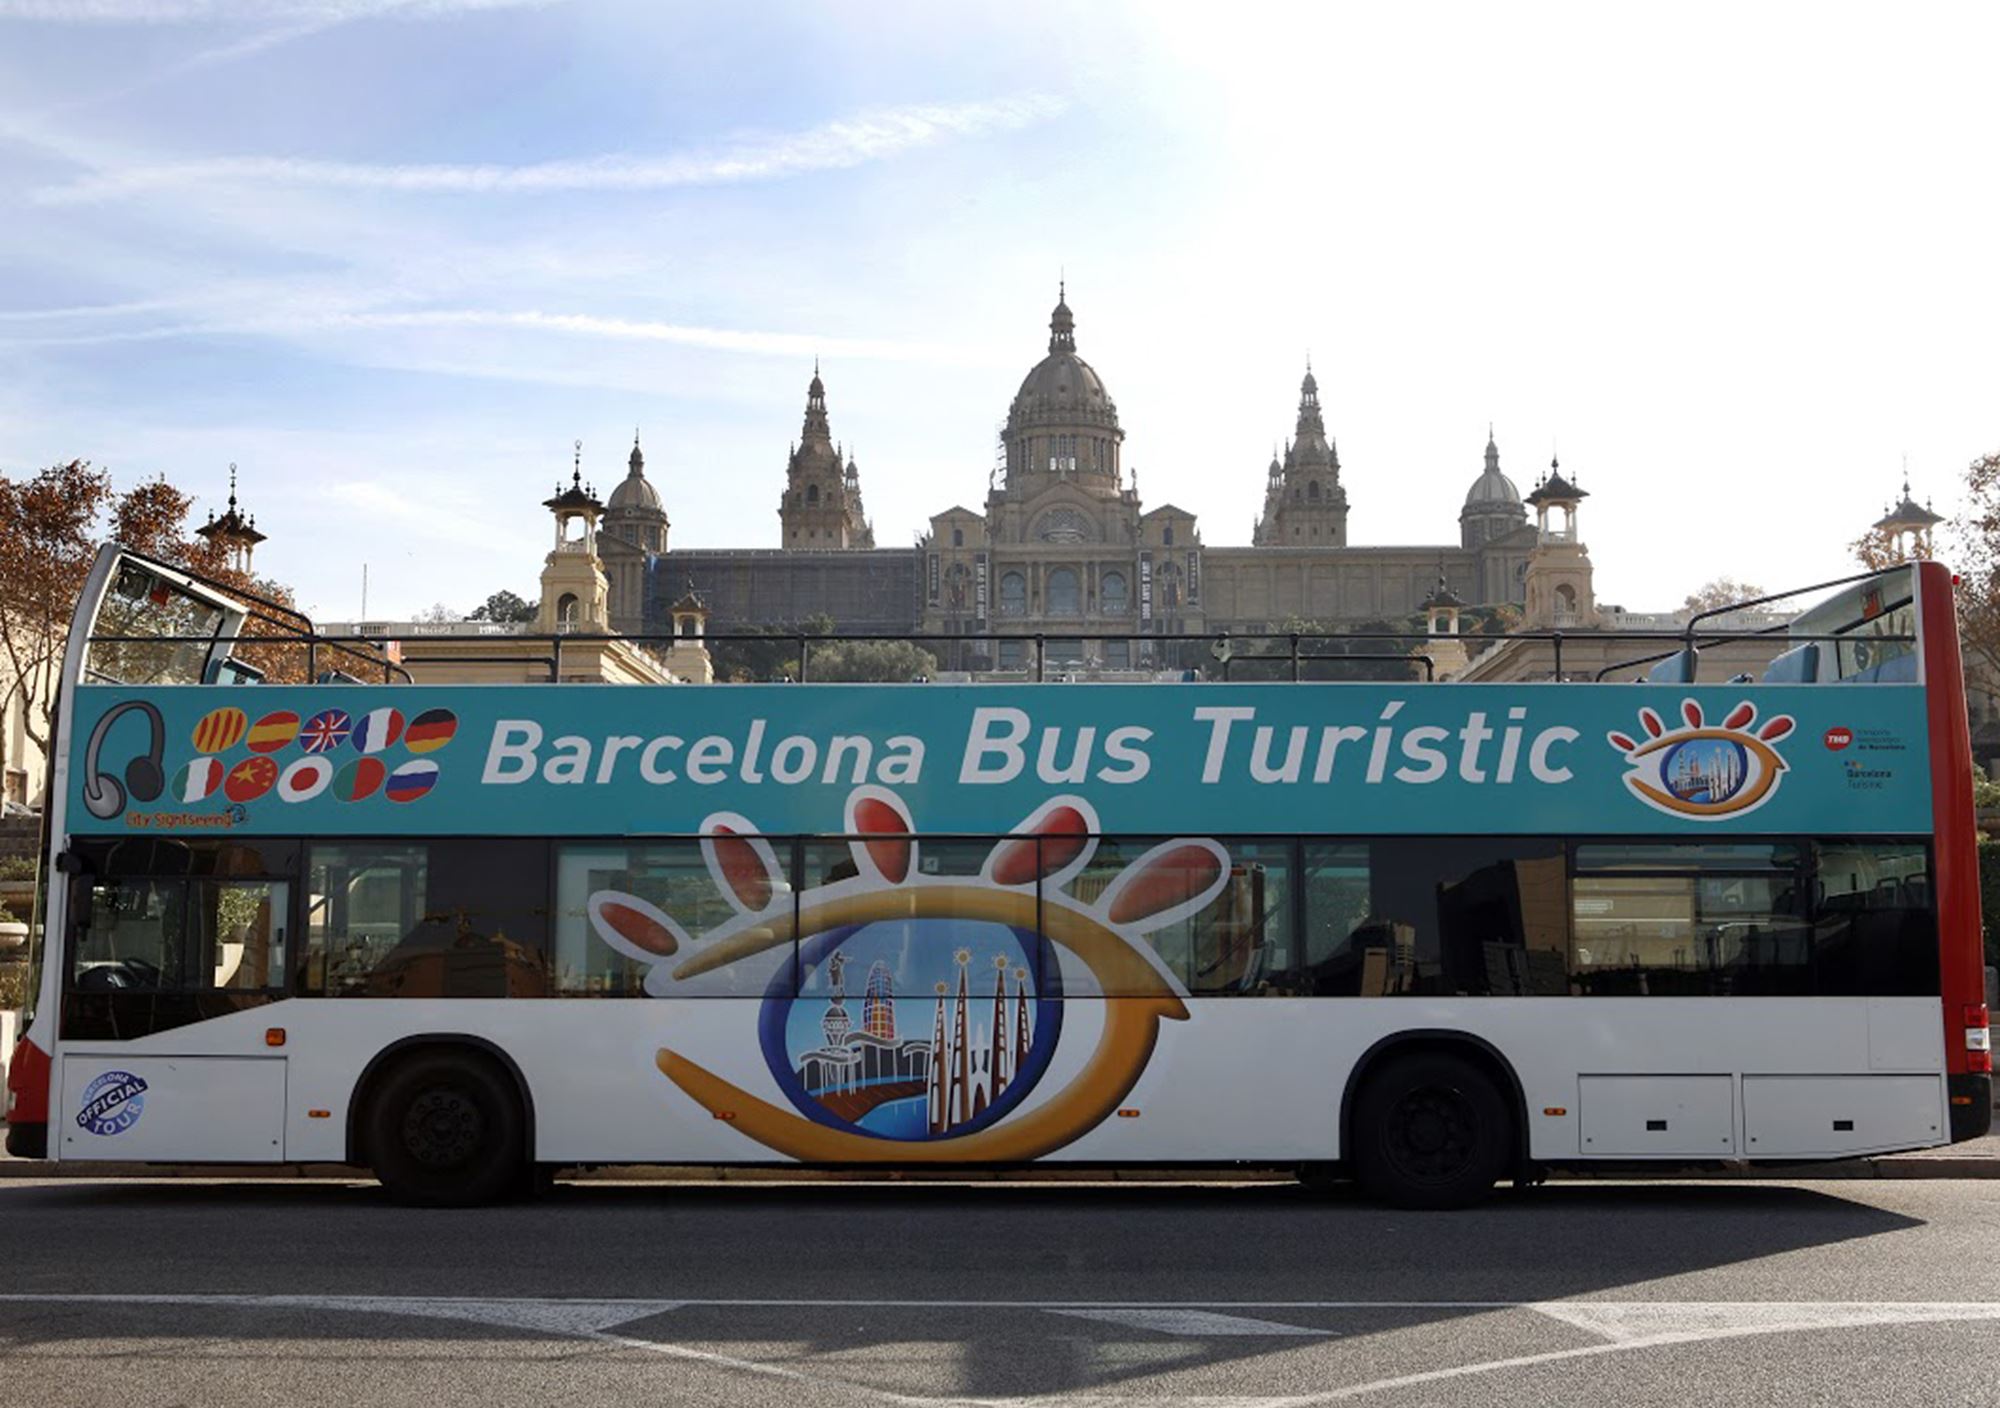 réservations visites guidées Bus Touristique City Sightseeing Barcelone billets visiter